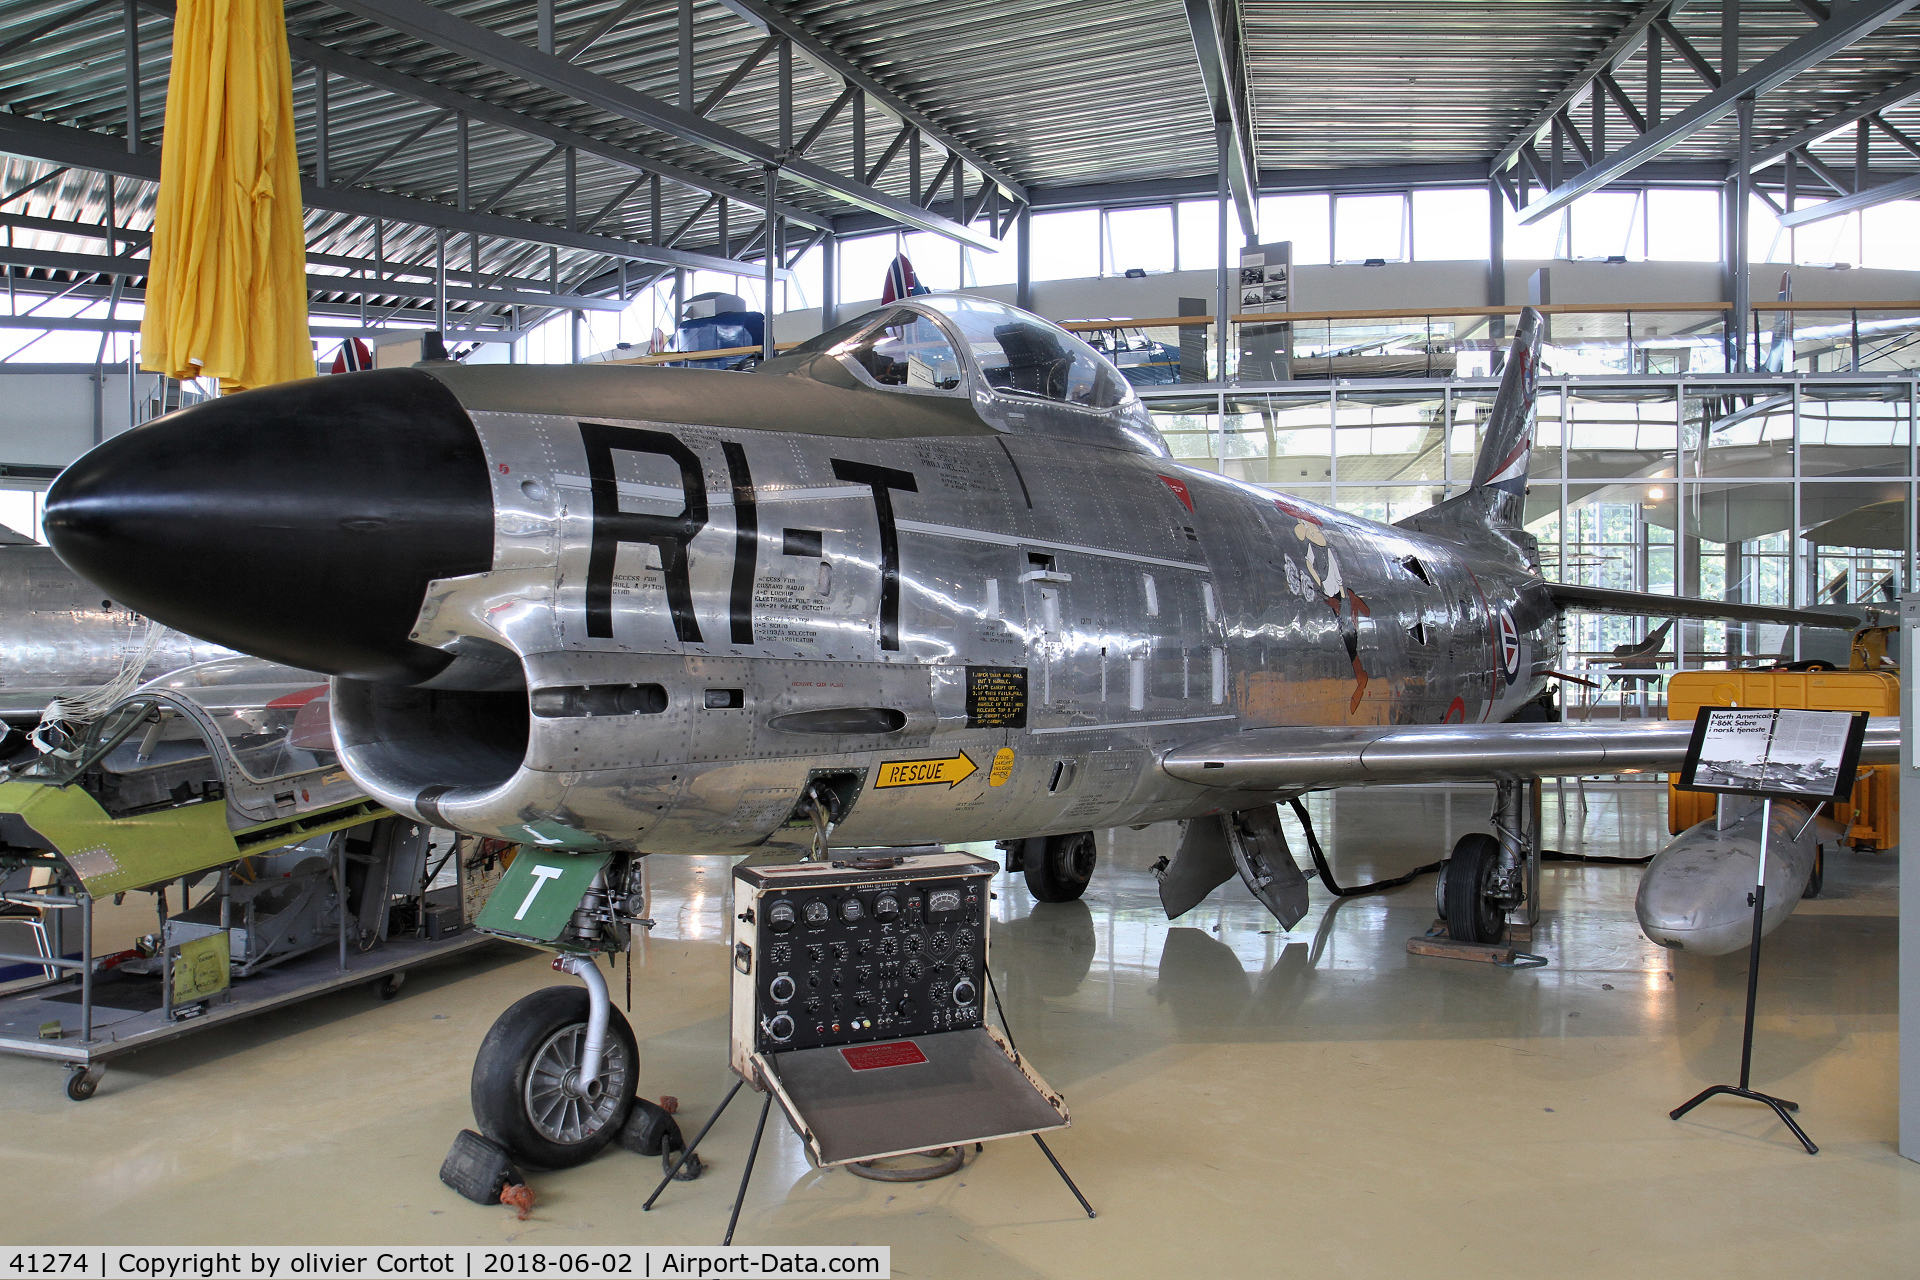 41274, 1954 North American F-86K Sabre C/N 213-44, 54-1274 F-86K